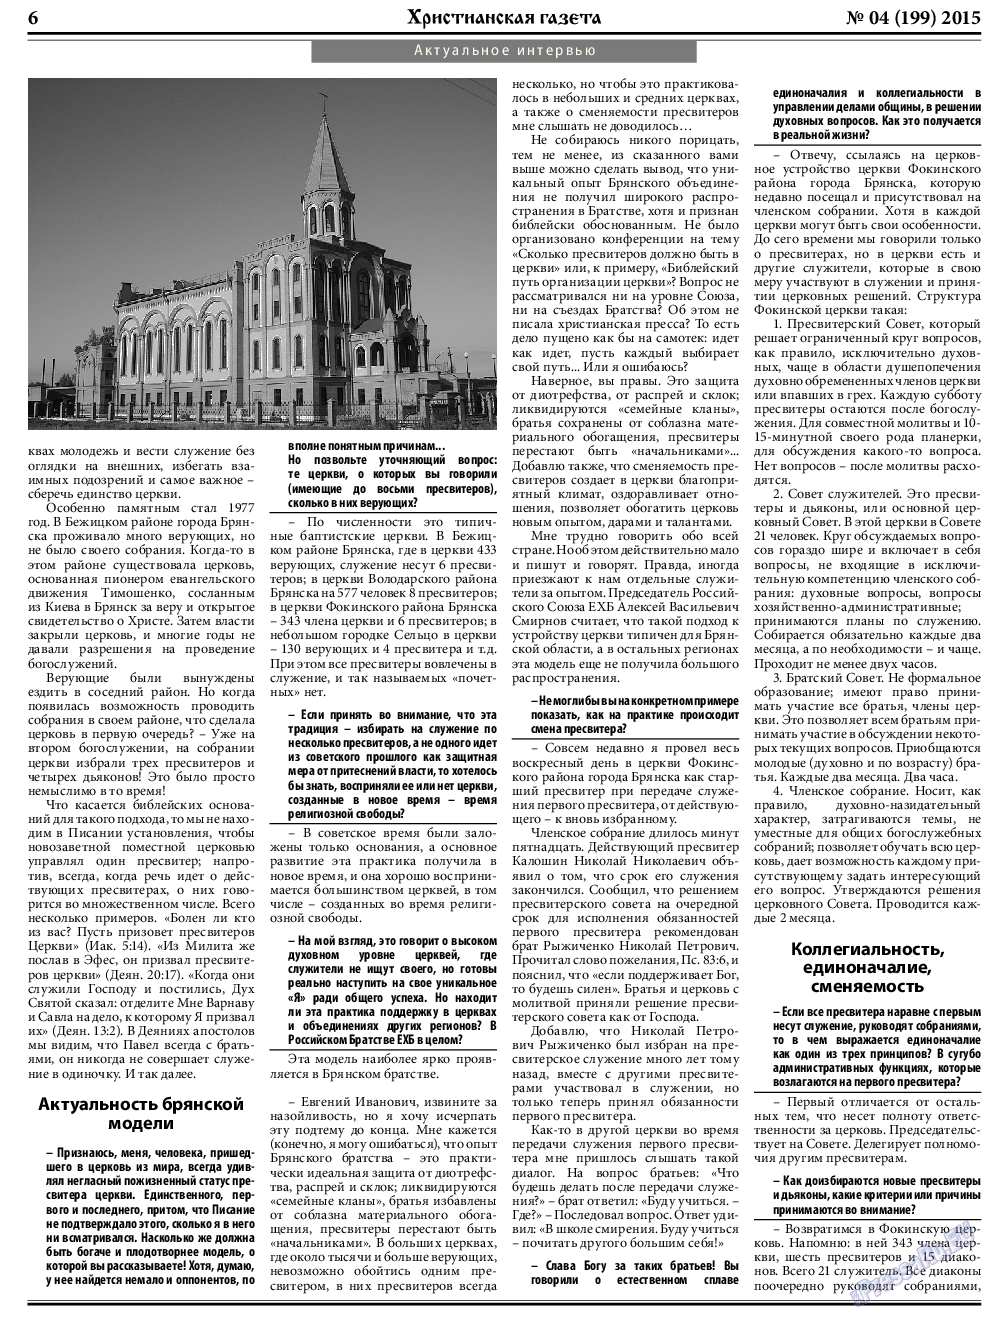 Христианская газета, газета. 2015 №4 стр.6